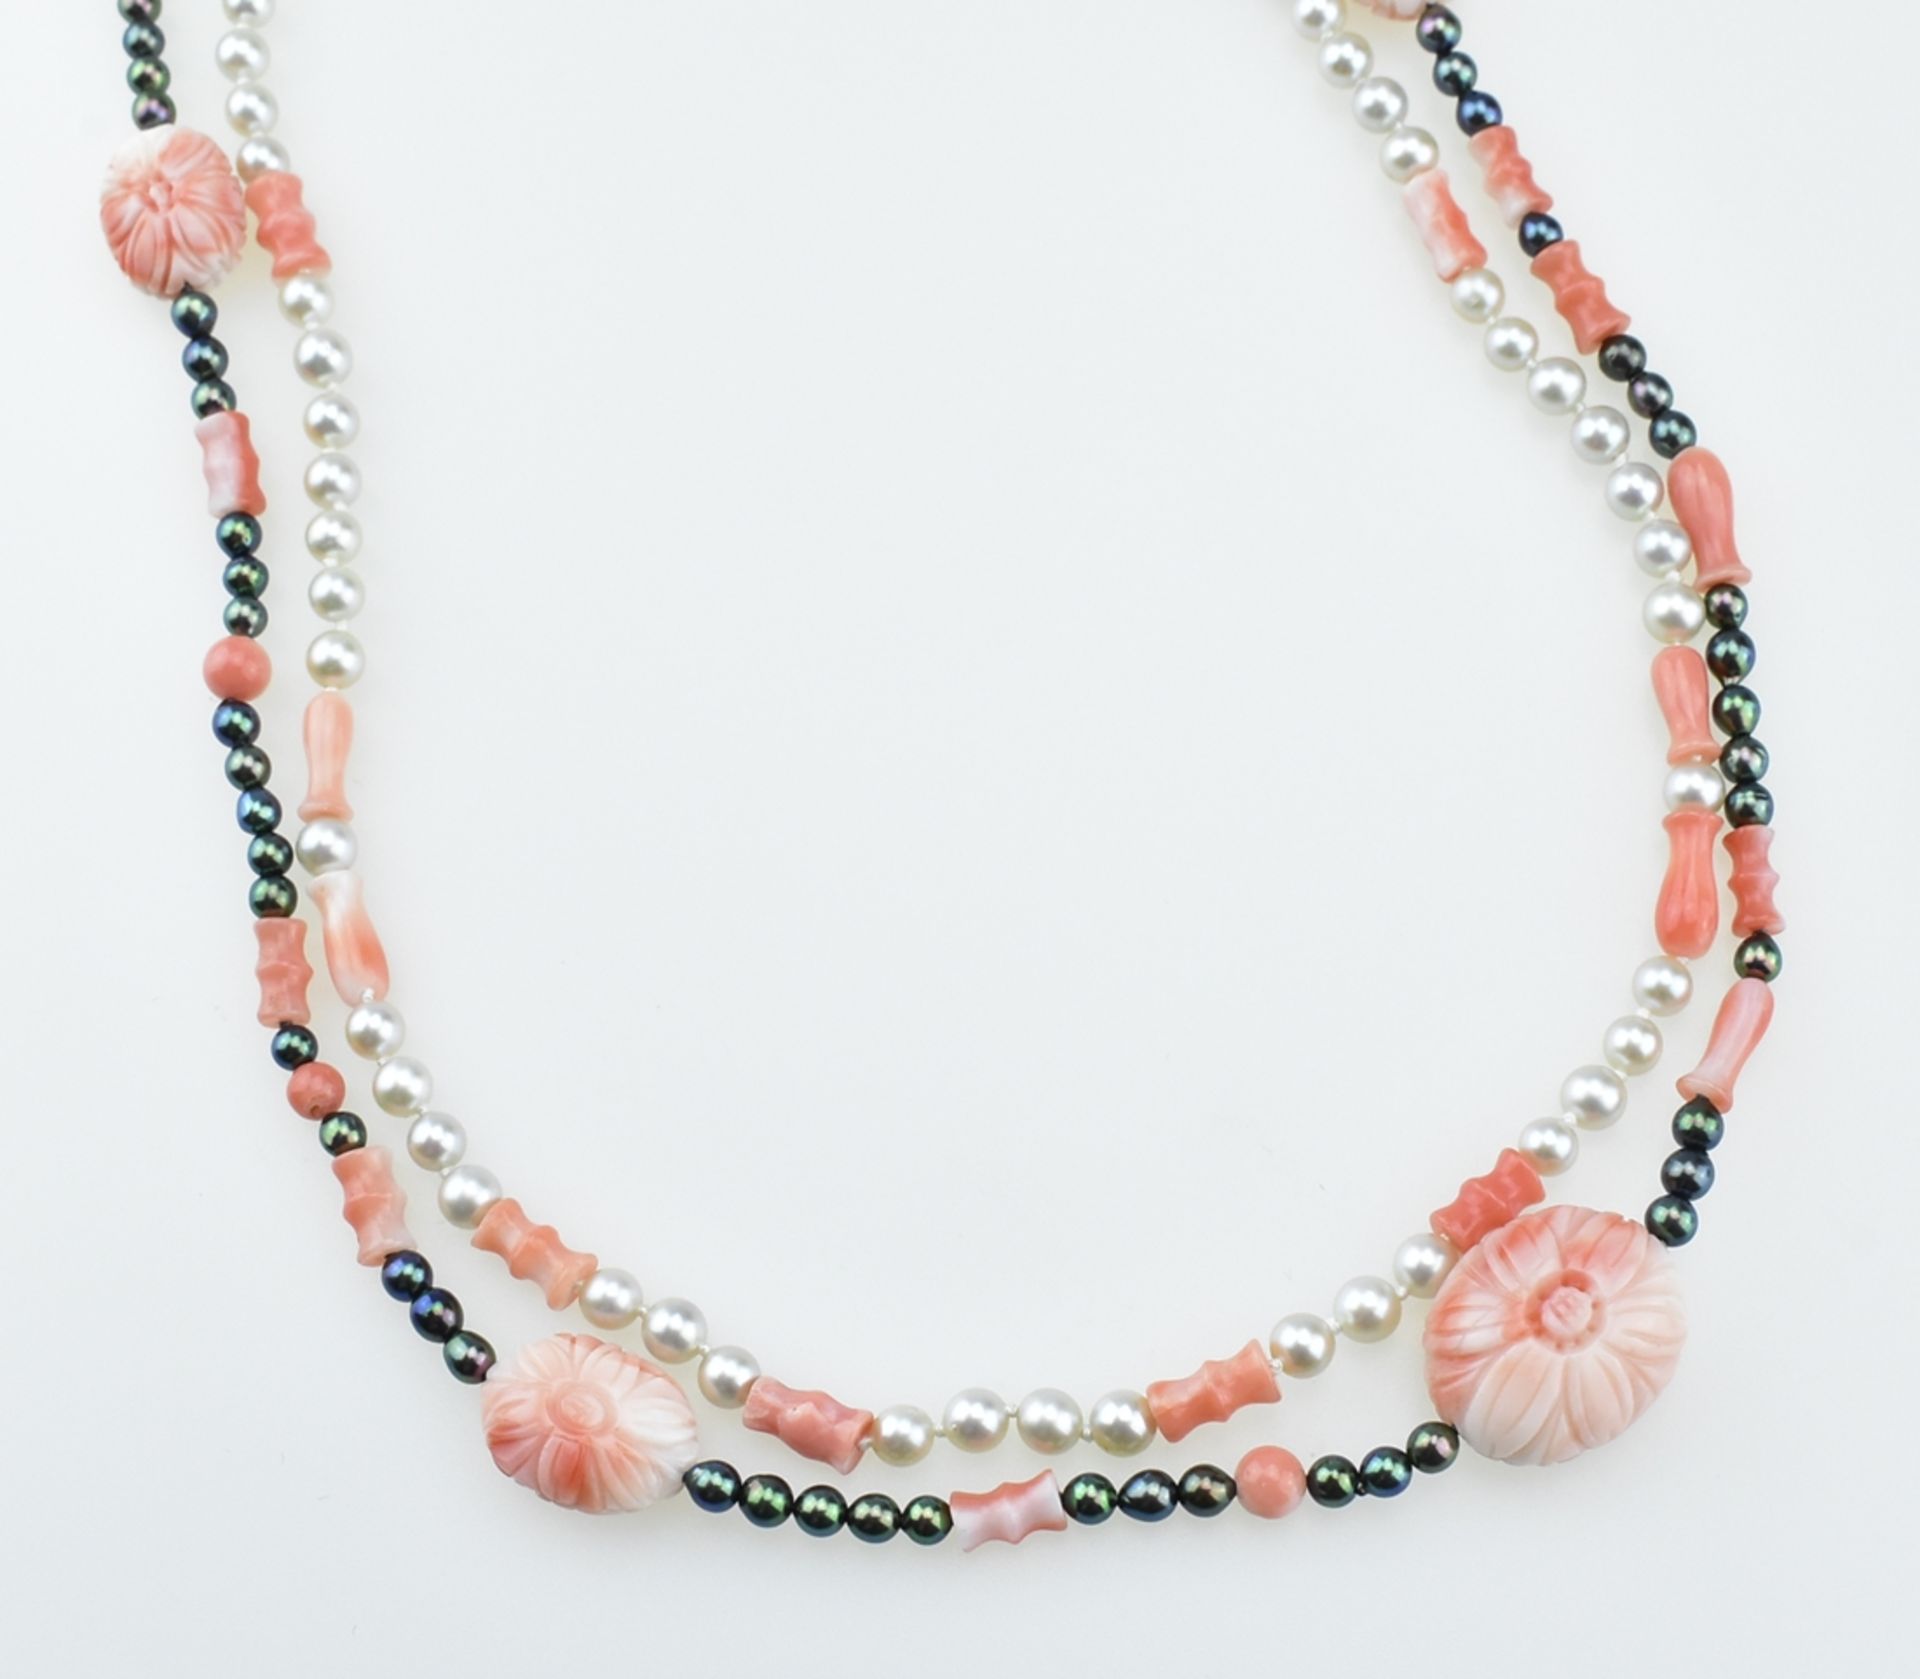 Zwei zarte Korall-/Perlketten. Schwarze und weiße Perlen, geschnittene Korallen. Schließe 18 ct. GG - Image 2 of 2